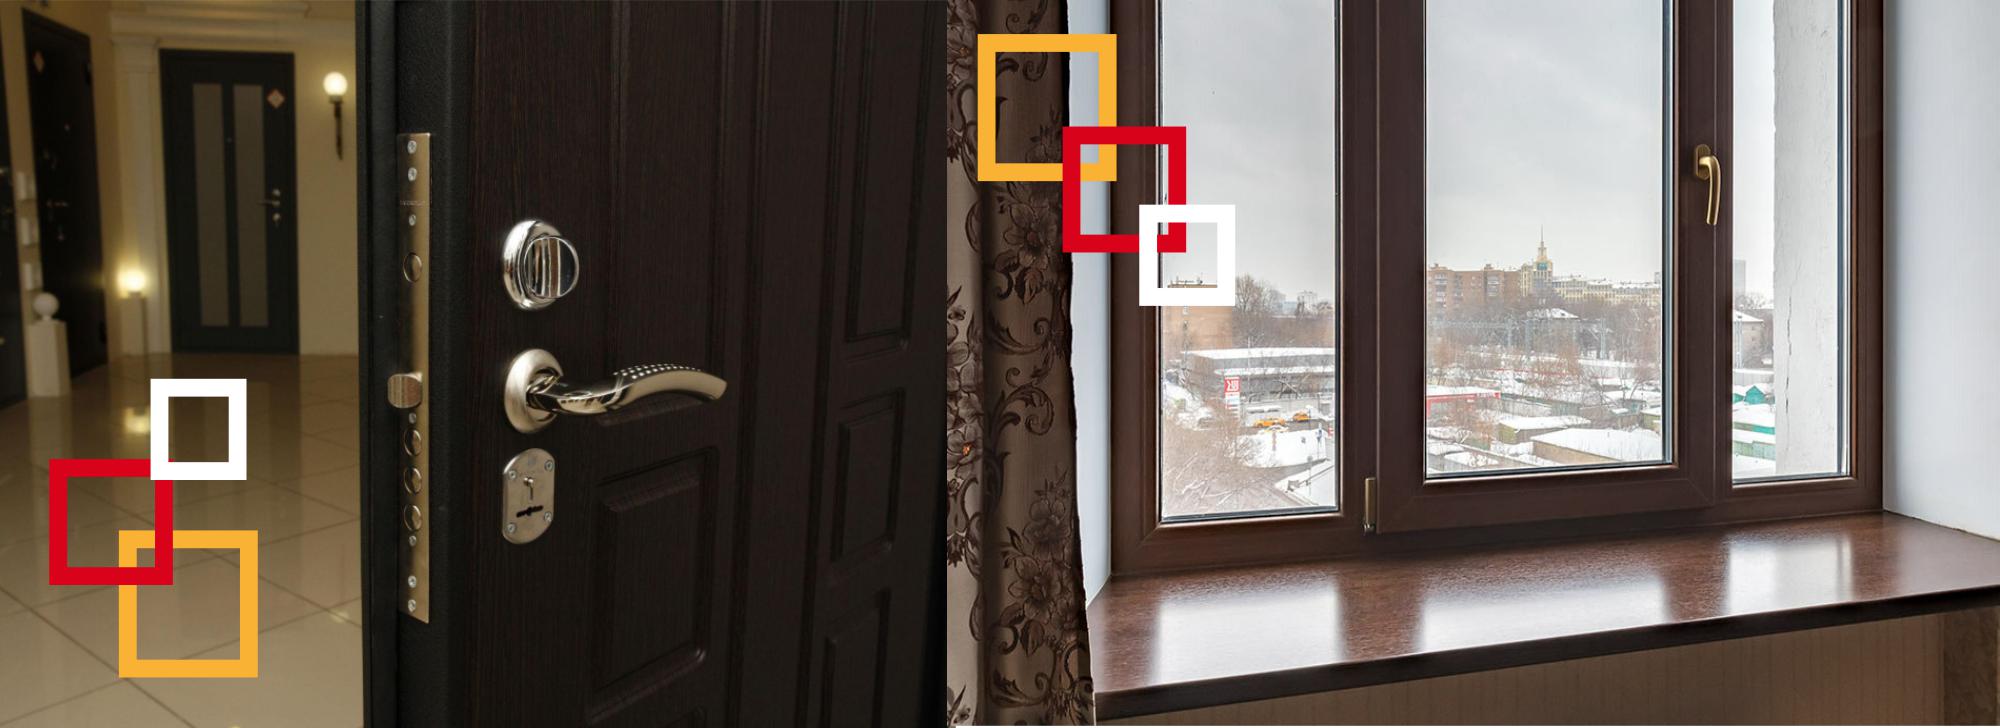 Установка фурнитуры на двери и окна